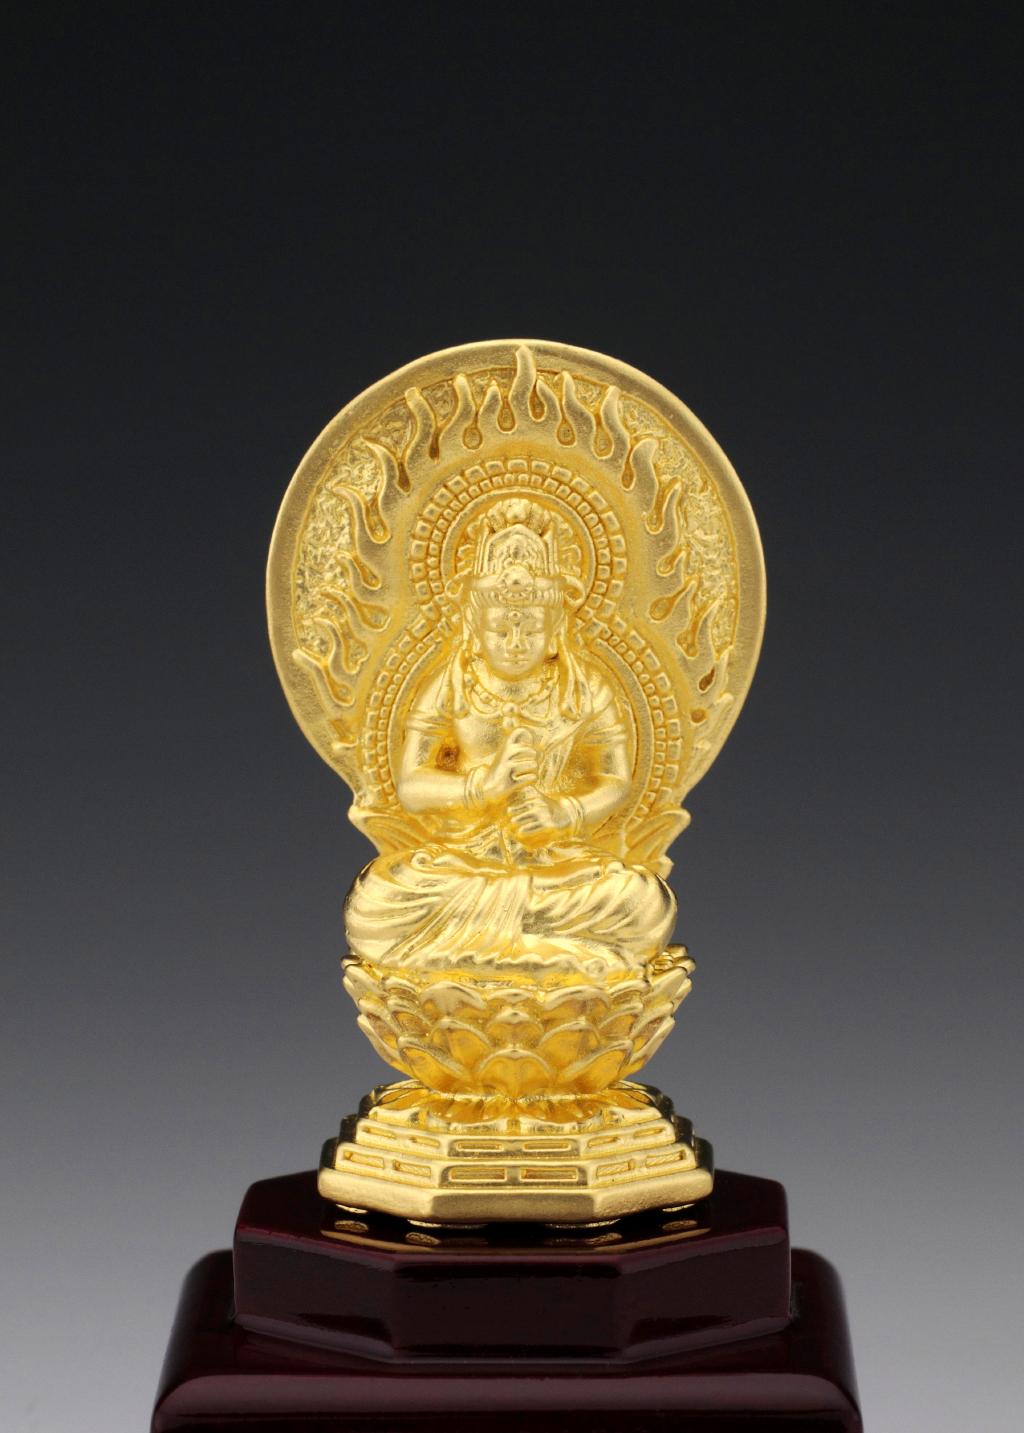 【仏像】大日如来 - 純金製 ケース付き | 日本の手技,純金製御仏像 | | 仏像ワールド